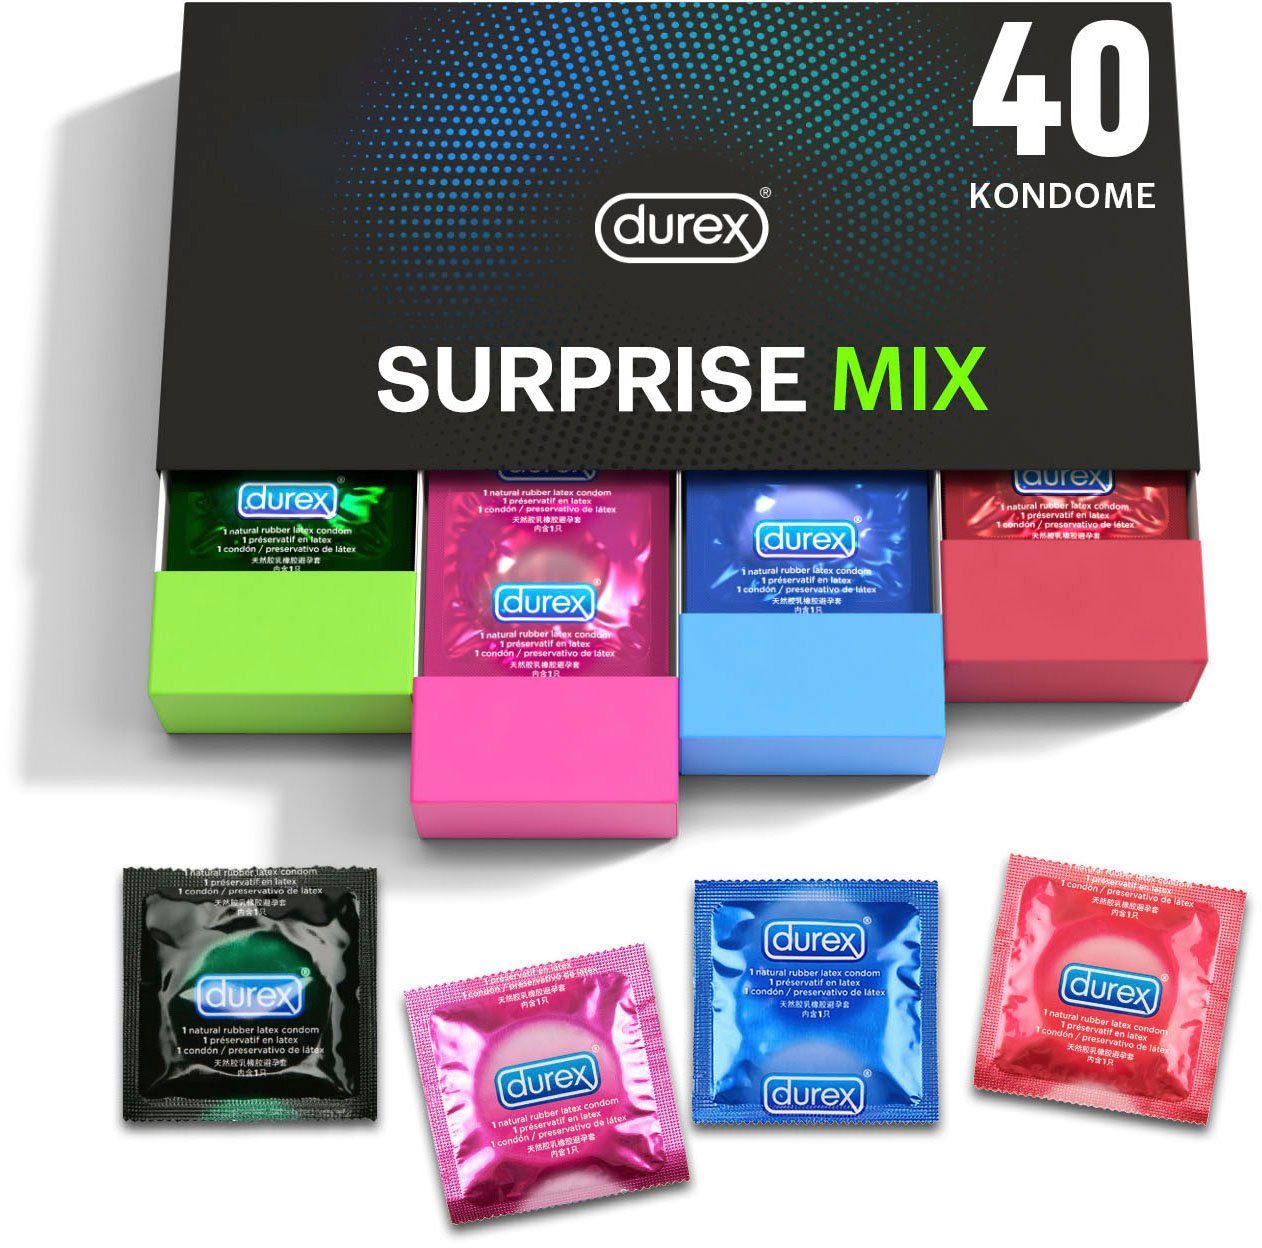 Me Surprise St., durex Für extra Stimulation Packung, Kondome 40